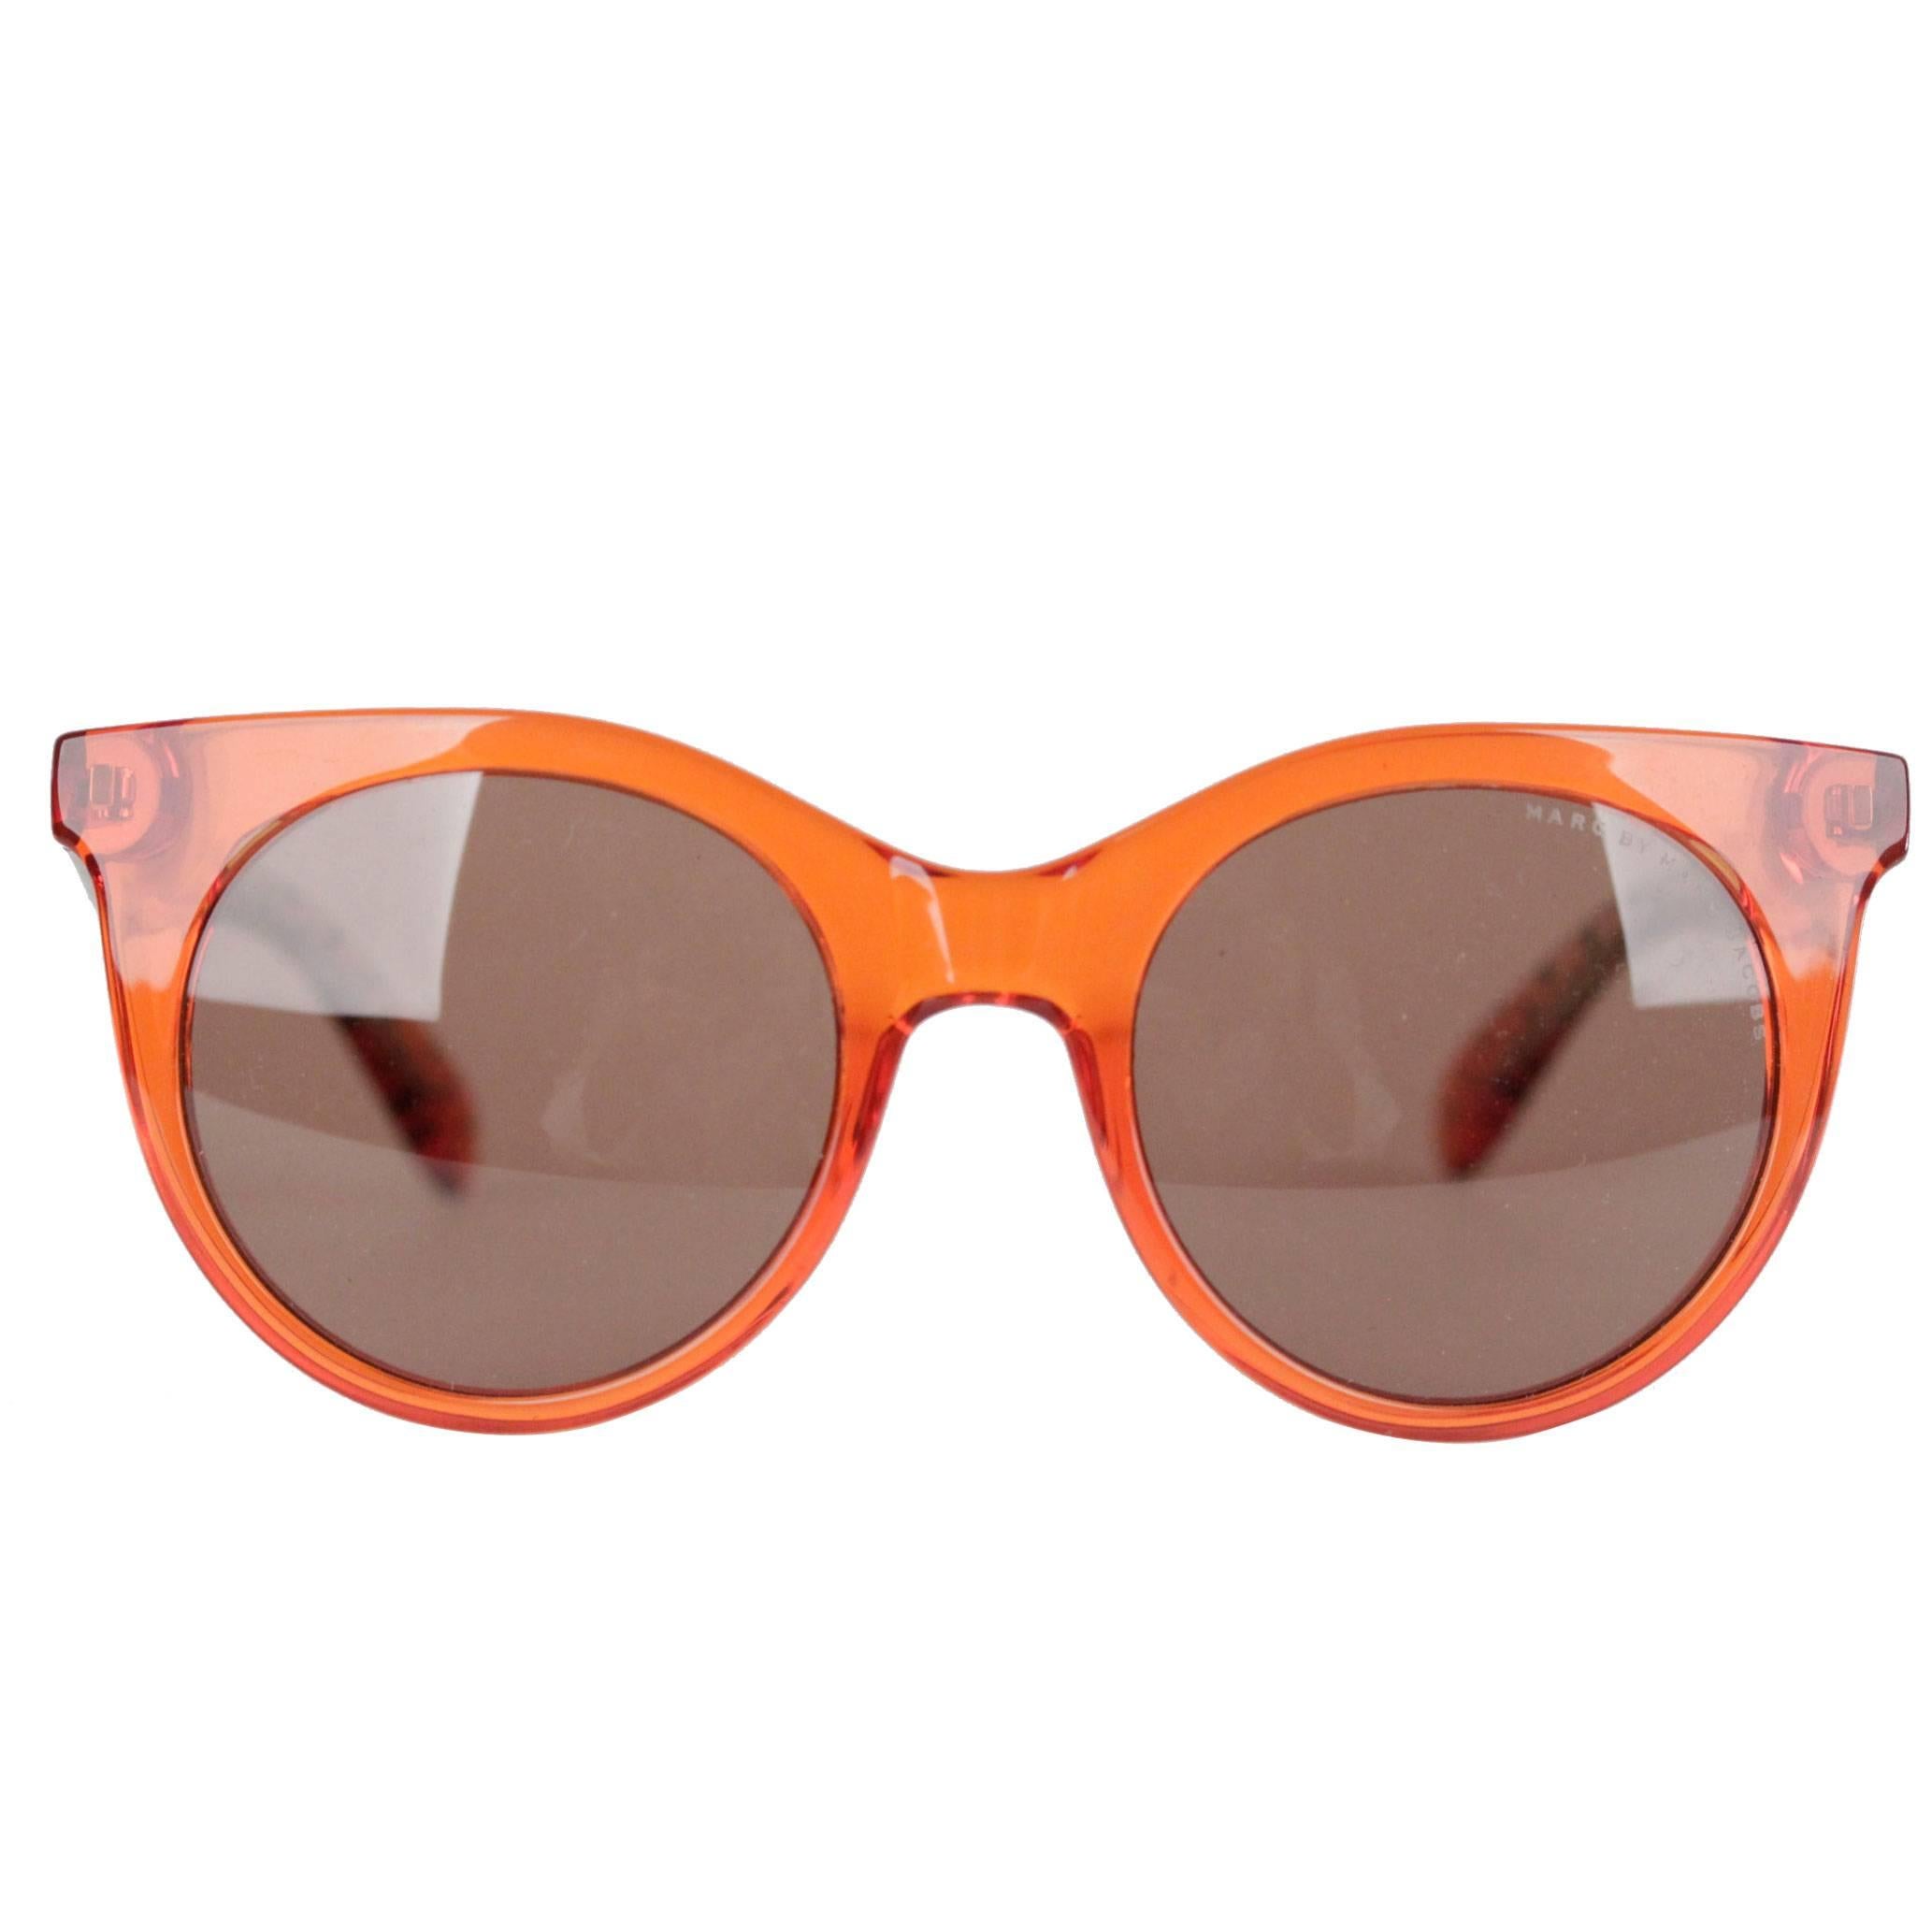 MARC by MARC JACOBS Eyewear MMJ 412/S 6HM UT Orange SUNGLASSES w/ CASE